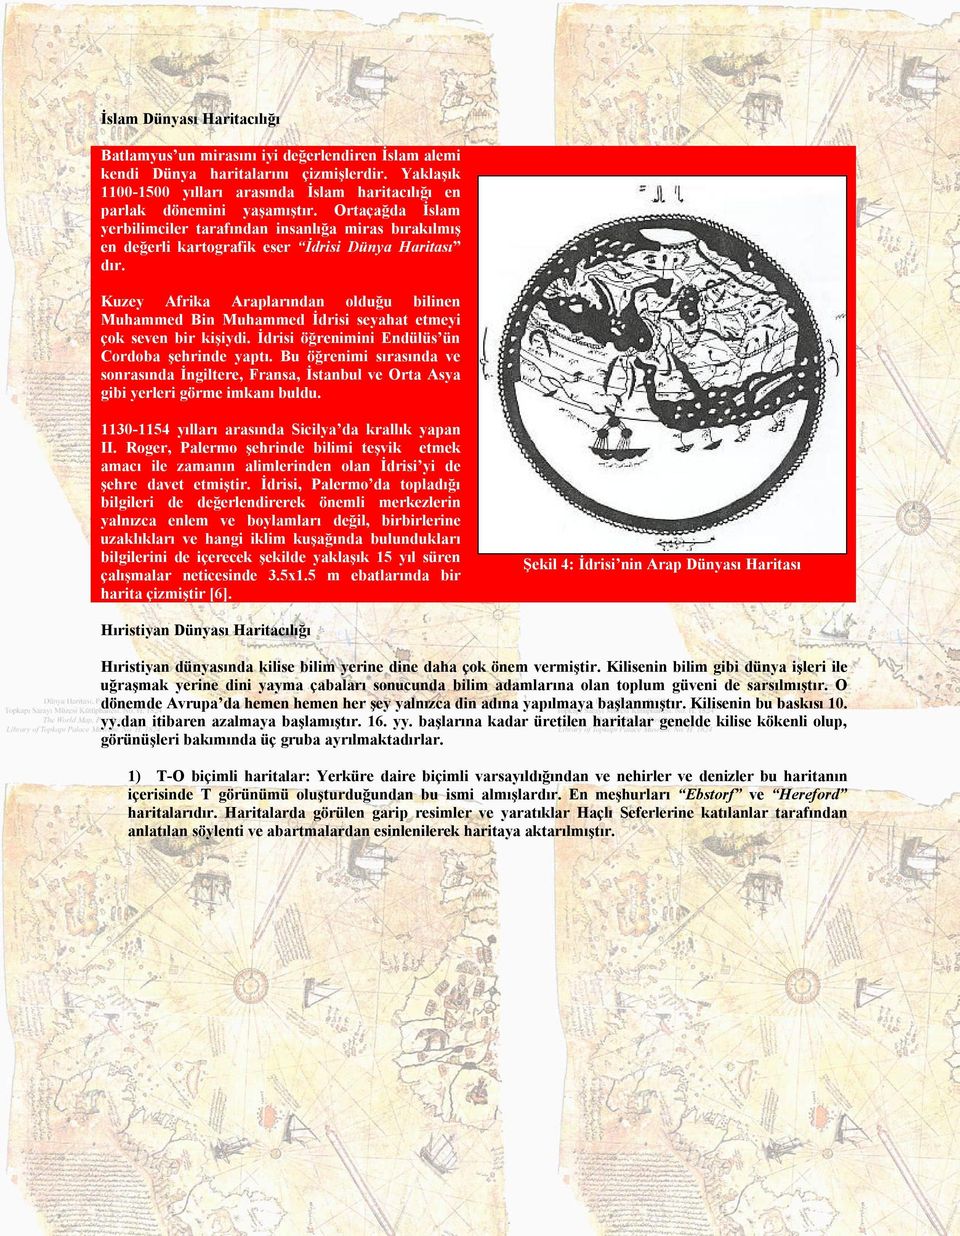 Ortaçağda İslam yerbilimciler tarafından insanlığa miras bırakılmış en değerli kartografik eser İdrisi Dünya Haritası dır.